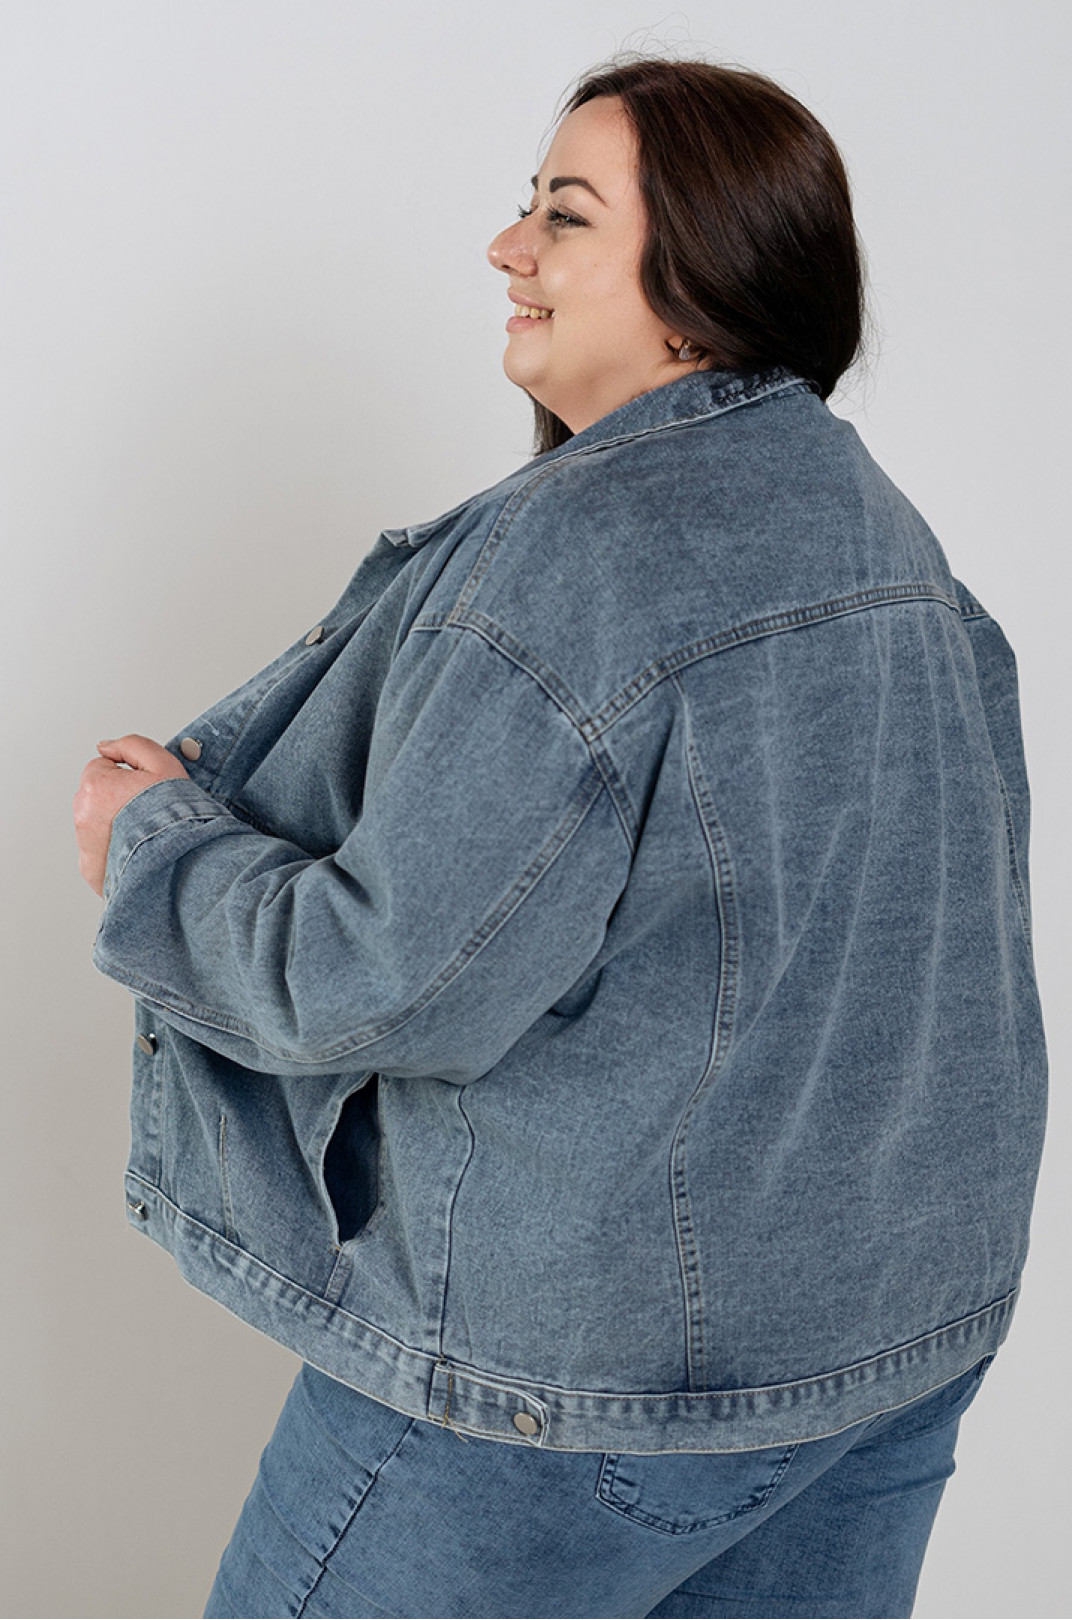 Куртка джинсова зі знімним капюшоном великих розмірів